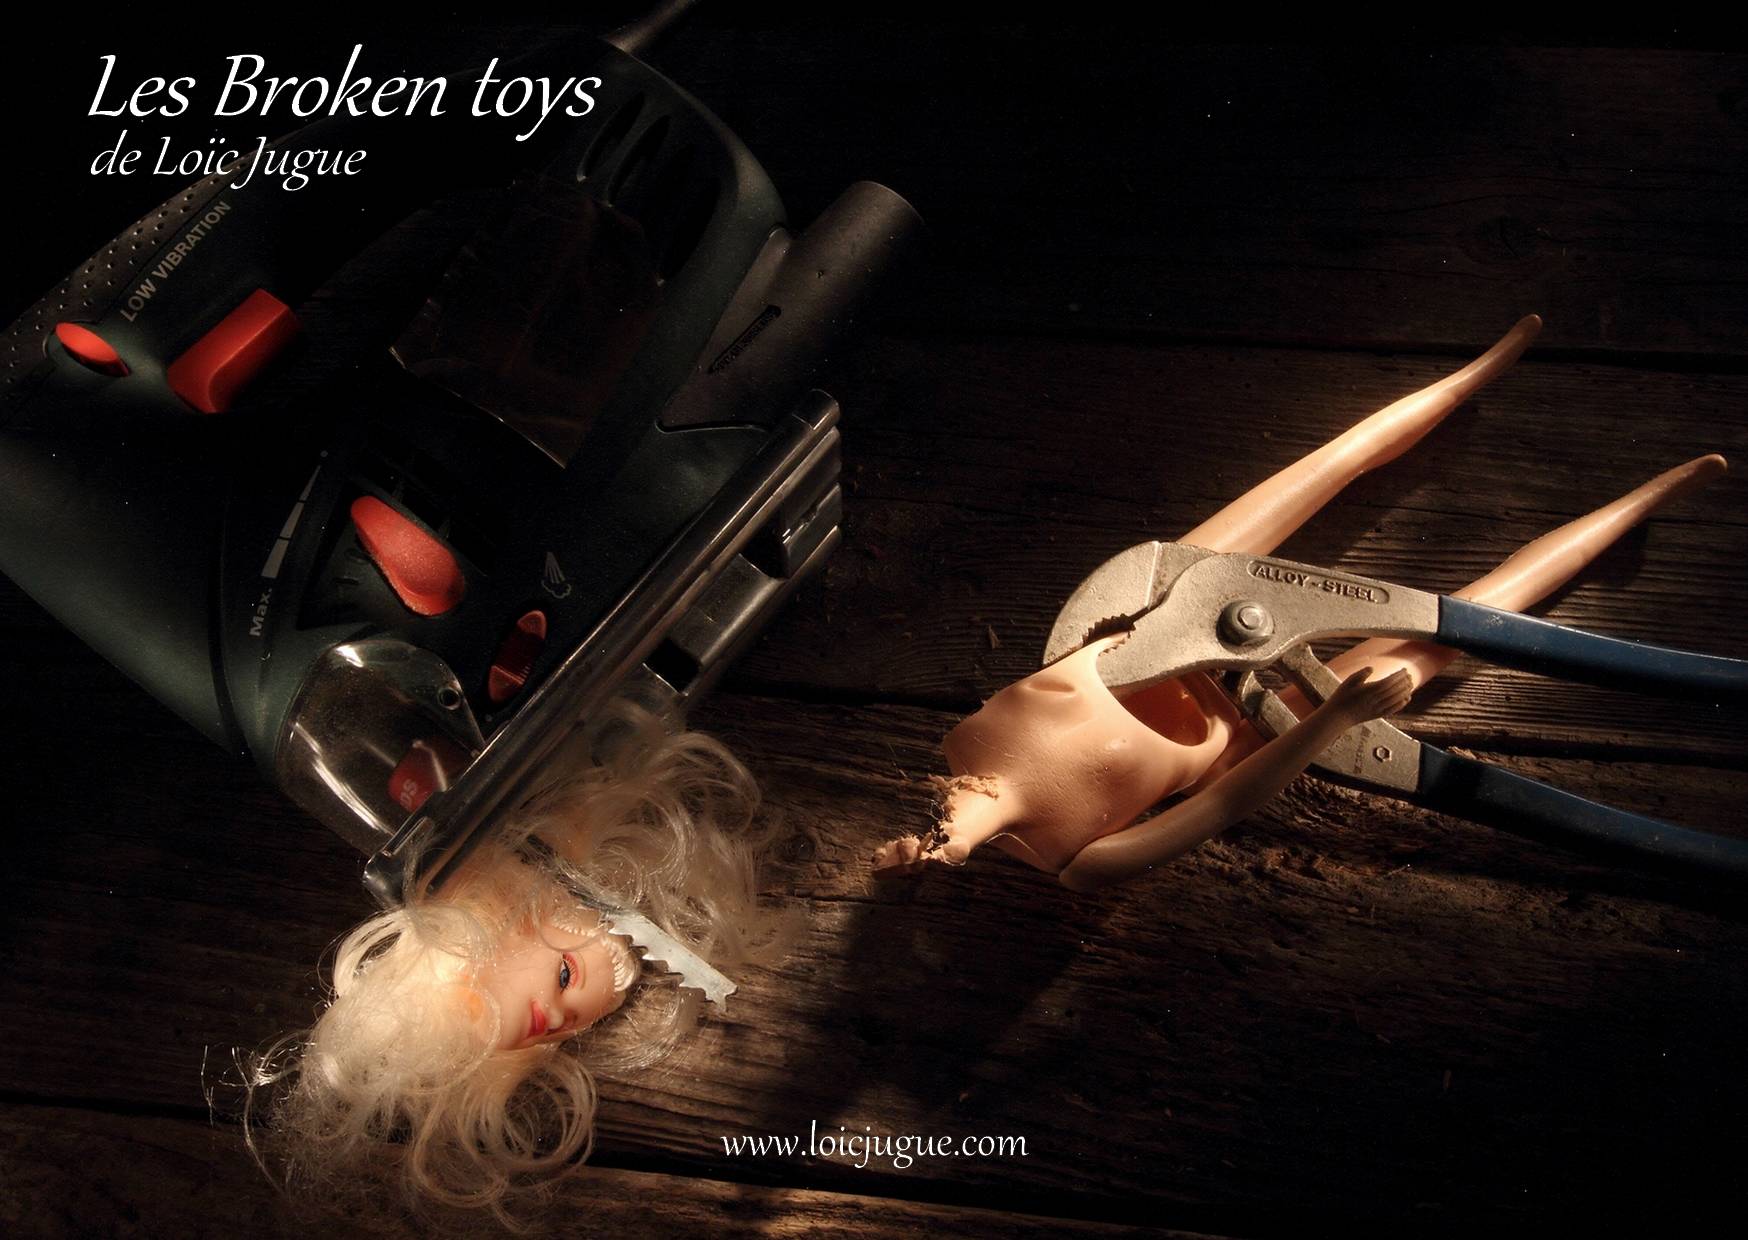 Les broken toys de Loïc Jugue: La poupée et la scie sauteuse